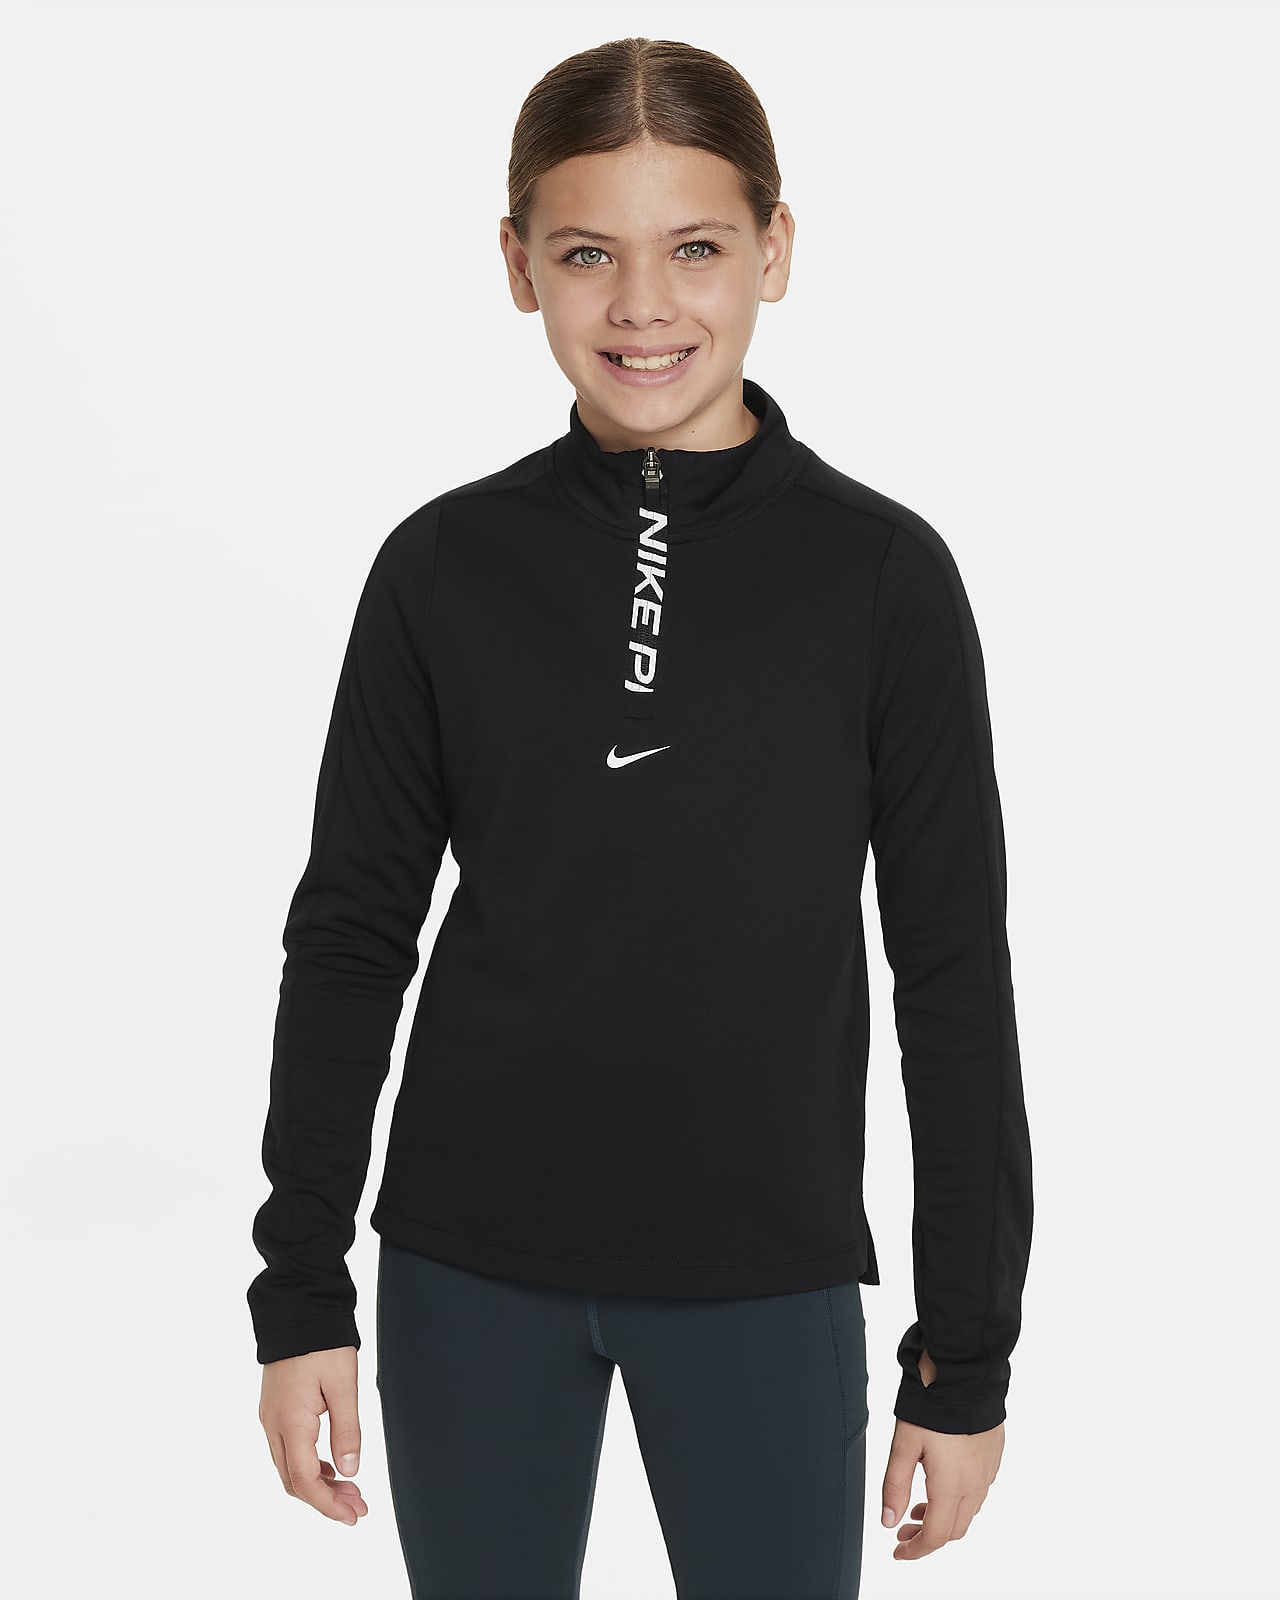 Maglia a manica lunga con zip a metà lunghezza Dri-FIT Nike Pro – Bambina/Ragazza